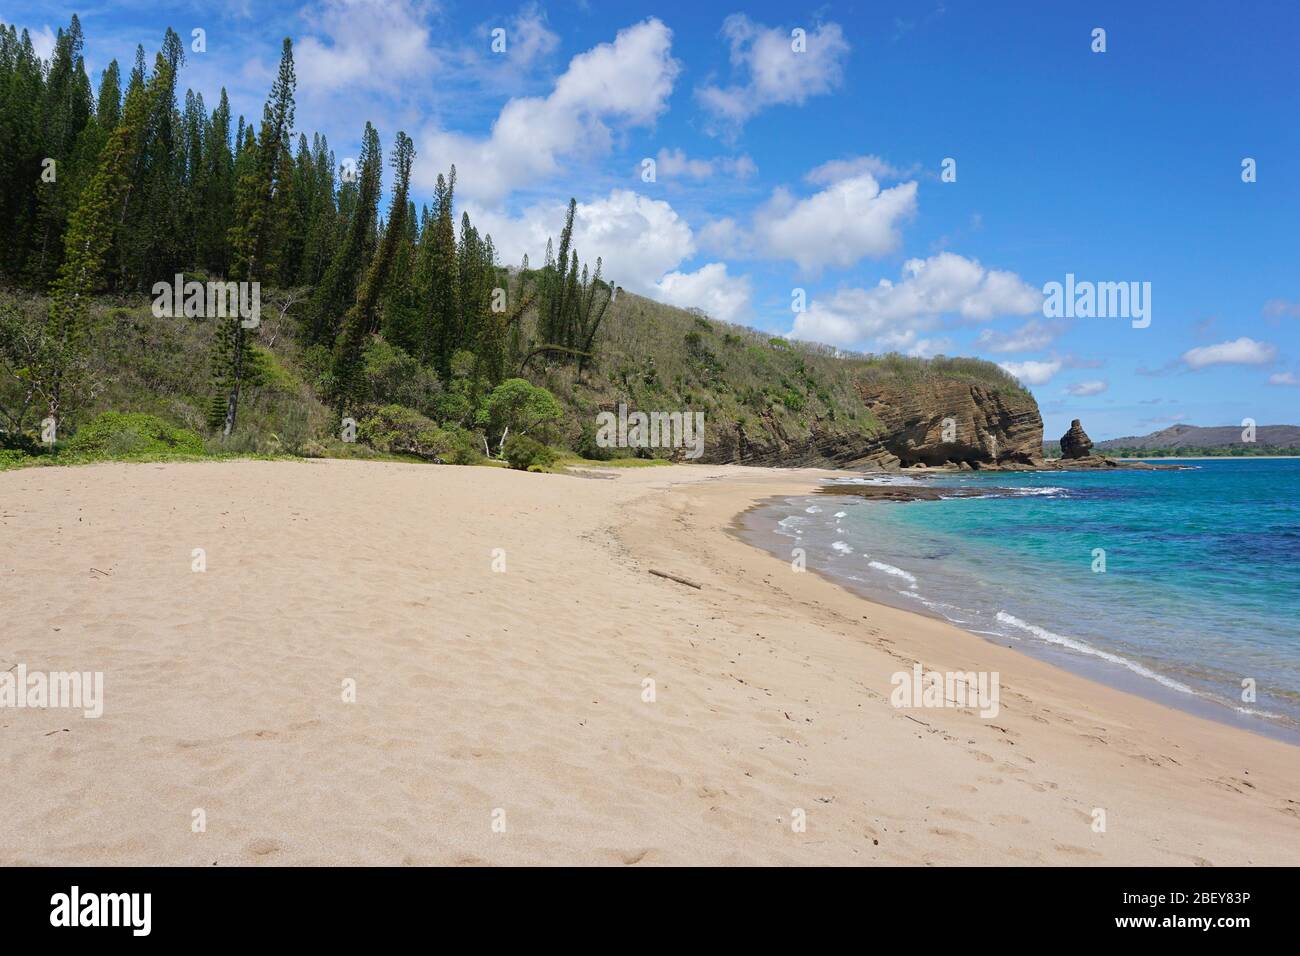 Bellissima spiaggia di sabbia in Nuova Caledonia, costa occidentale dell'isola di Grande-Terre vicino a Bourail, Oceania Foto Stock